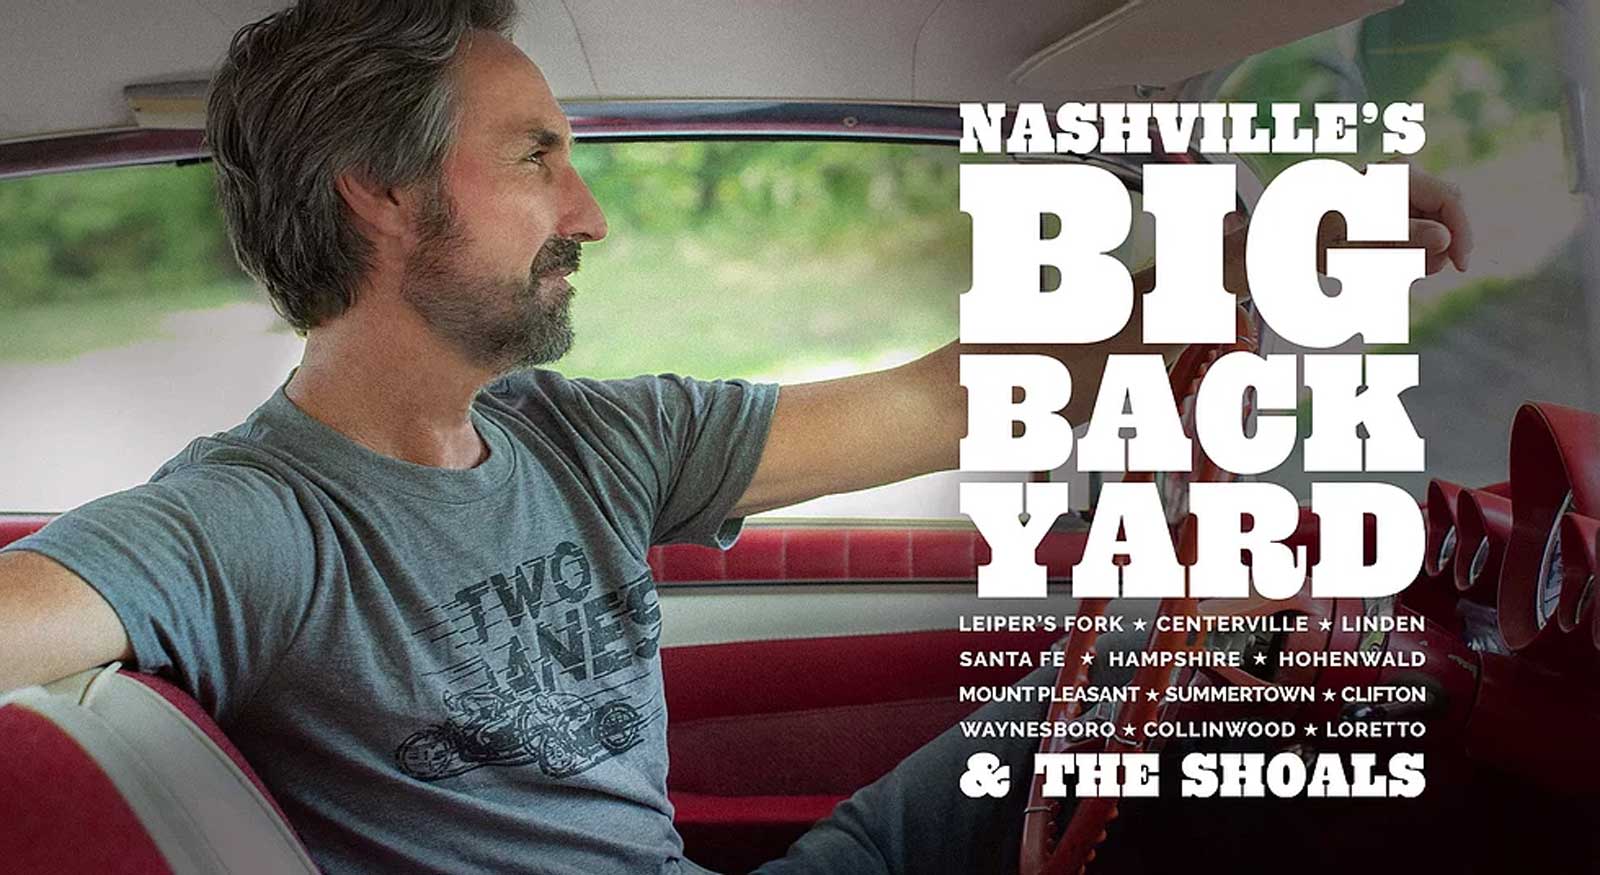 Nashville's Big Back Yard